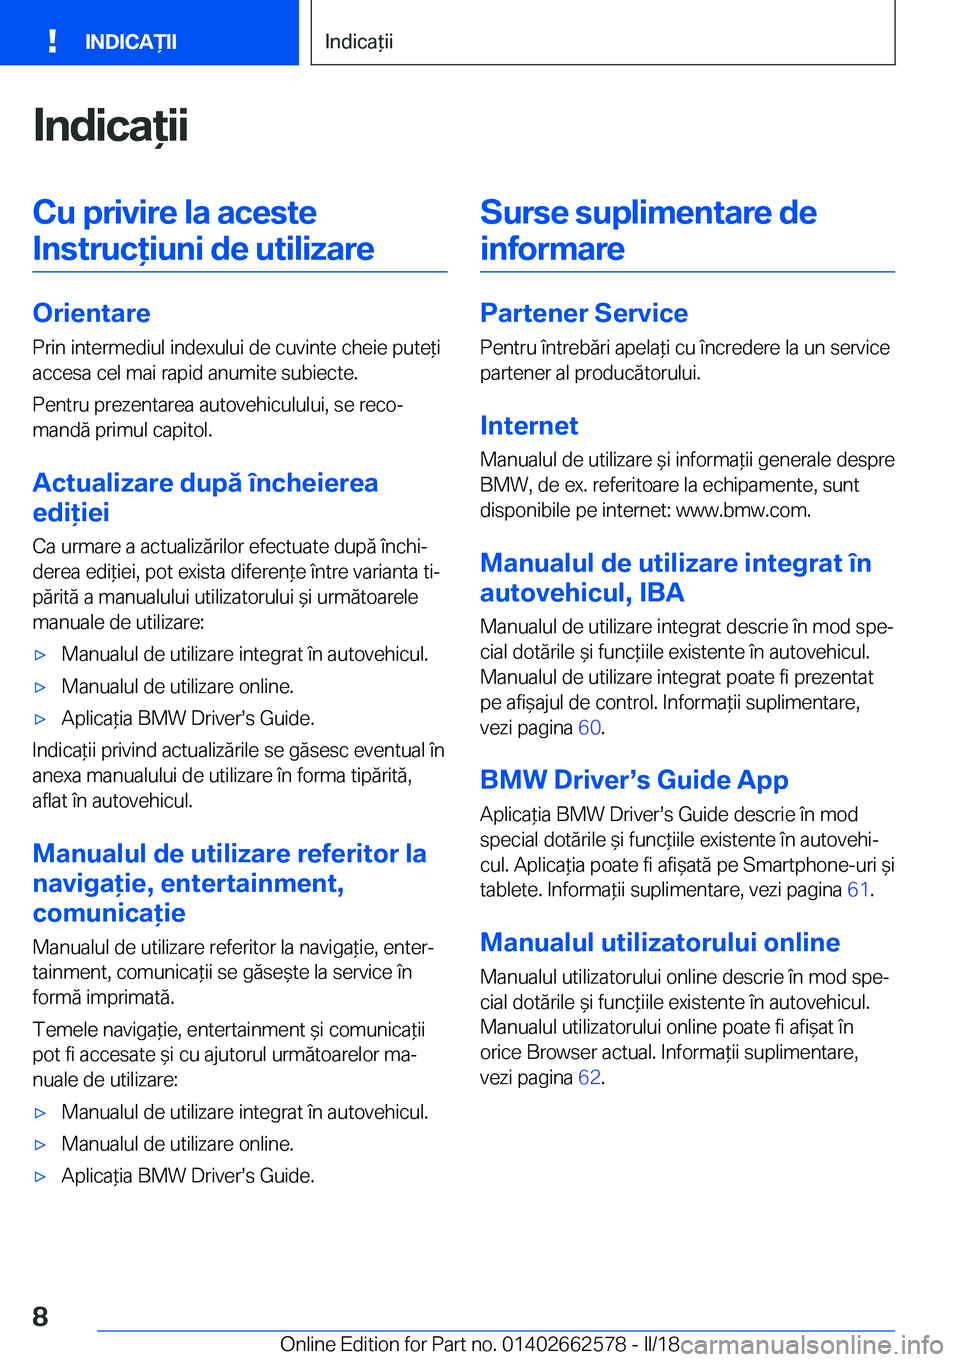 BMW M2 2018  Ghiduri De Utilizare (in Romanian) �I�n�d�i�c�a�i�i�C�u��p�r�i�v�i�r�e��l�a��a�c�e�s�t�e�I�n�s�t�r�u�c�i�u�n�i��d�e��u�t�i�l�i�z�a�r�e
�O�r�i�e�n�t�a�r�e �P�r�i�n� �i�n�t�e�r�m�e�d�i�u�l� �i�n�d�e�x�u�l�u�i� �d�e� �c�u�v�i�n�t